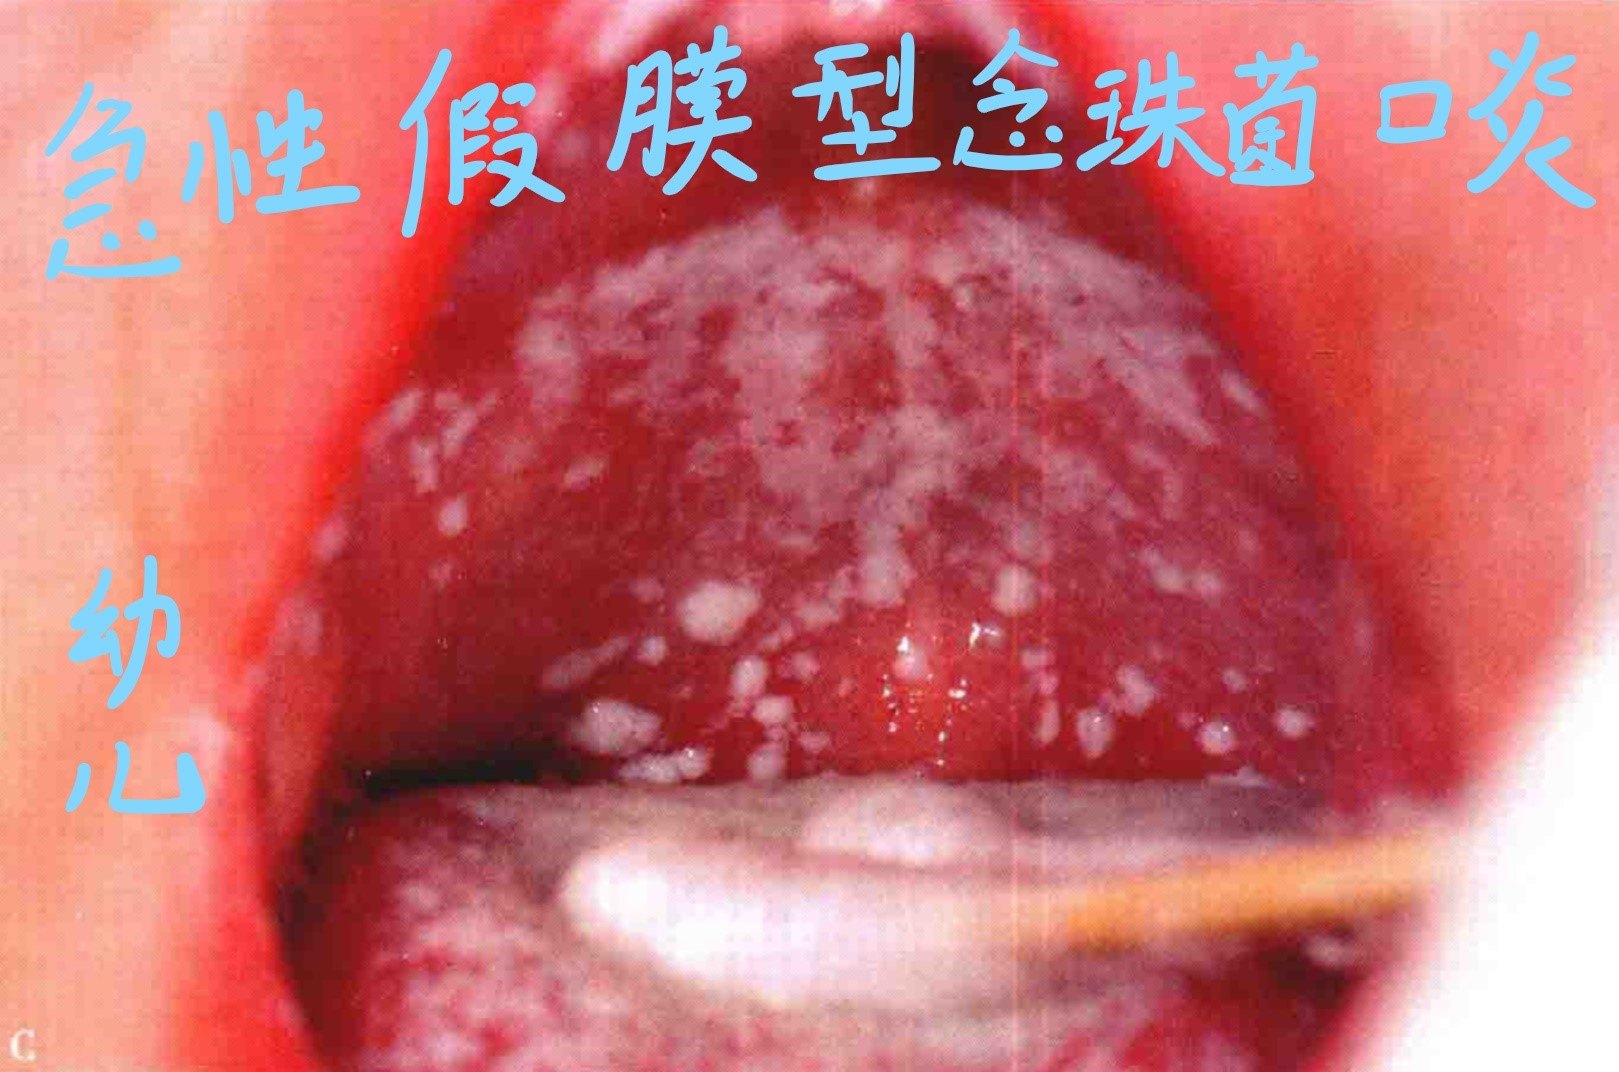 口腔科魏博医师治疗较为棘手,需行长时间的抗真菌治疗,bjorlin提出